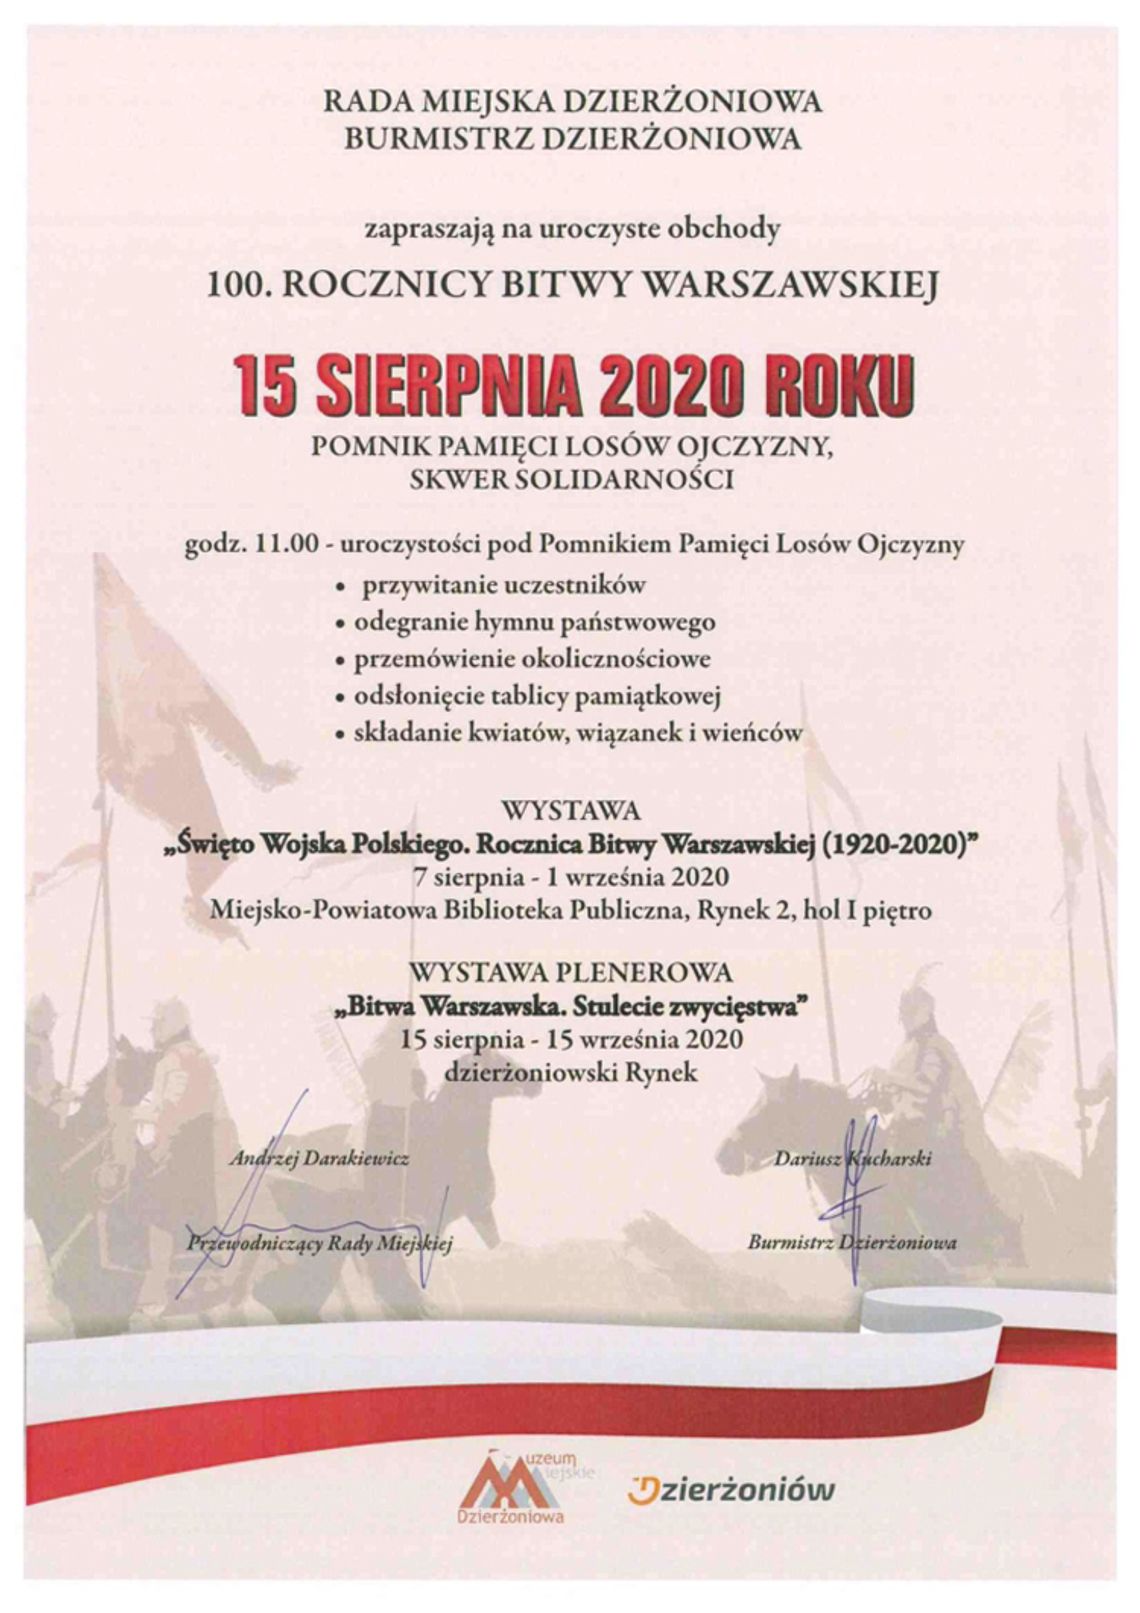 Zapowiedź uroczystych obchodów Bitwy Warszawskiej w Powiecie Dzierżoniowskim